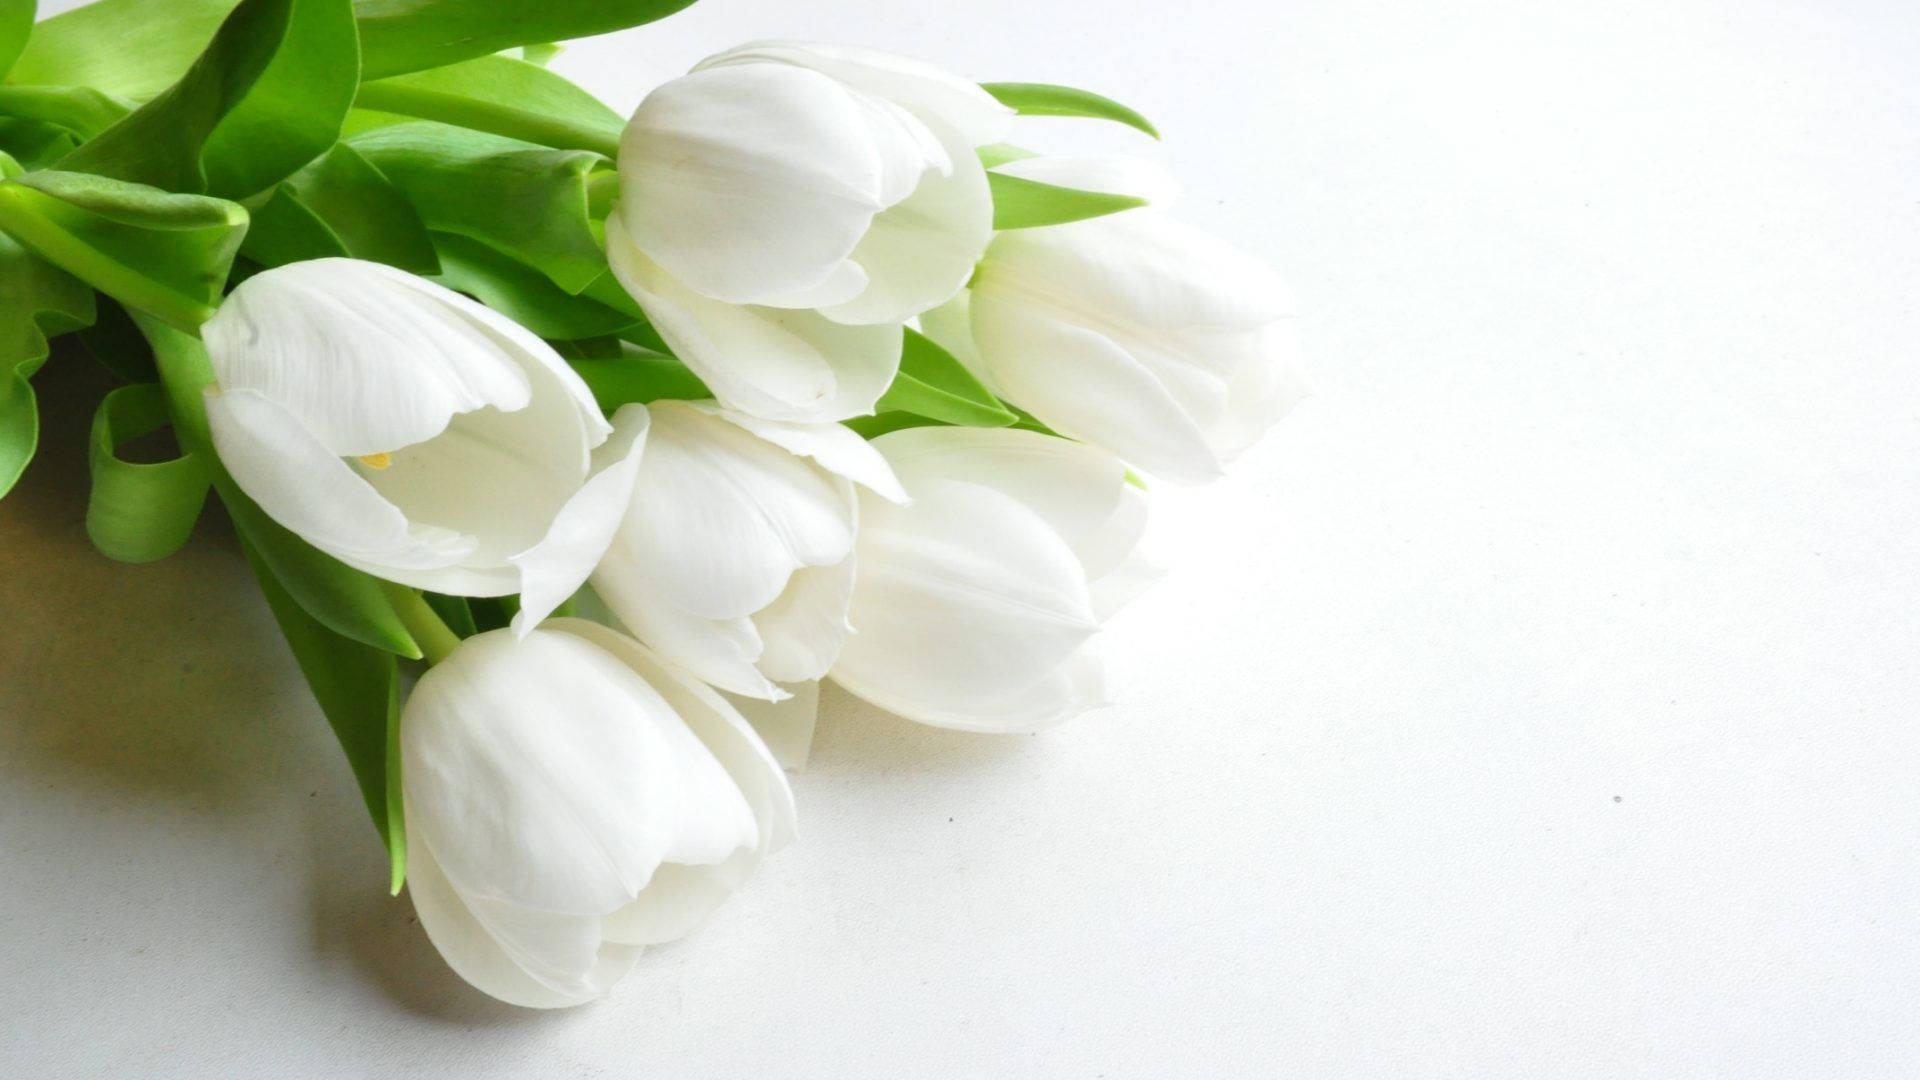 Five White Roses Condolence